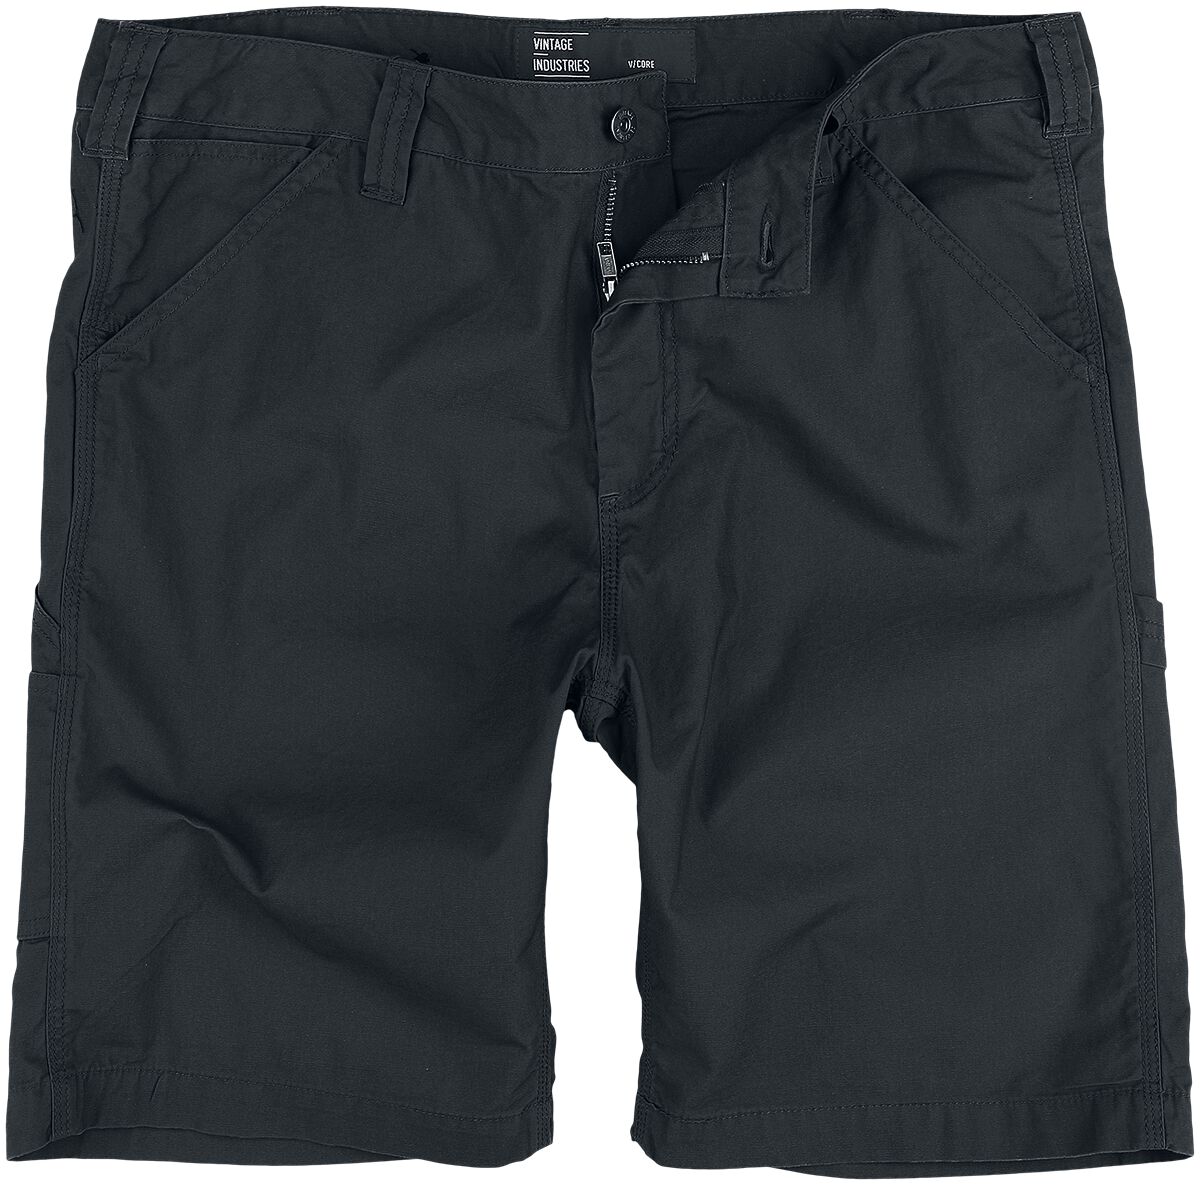 Vintage Industries Short - Alcott Shorts - XS bis 3XL - für Männer - Größe XXL - schwarz